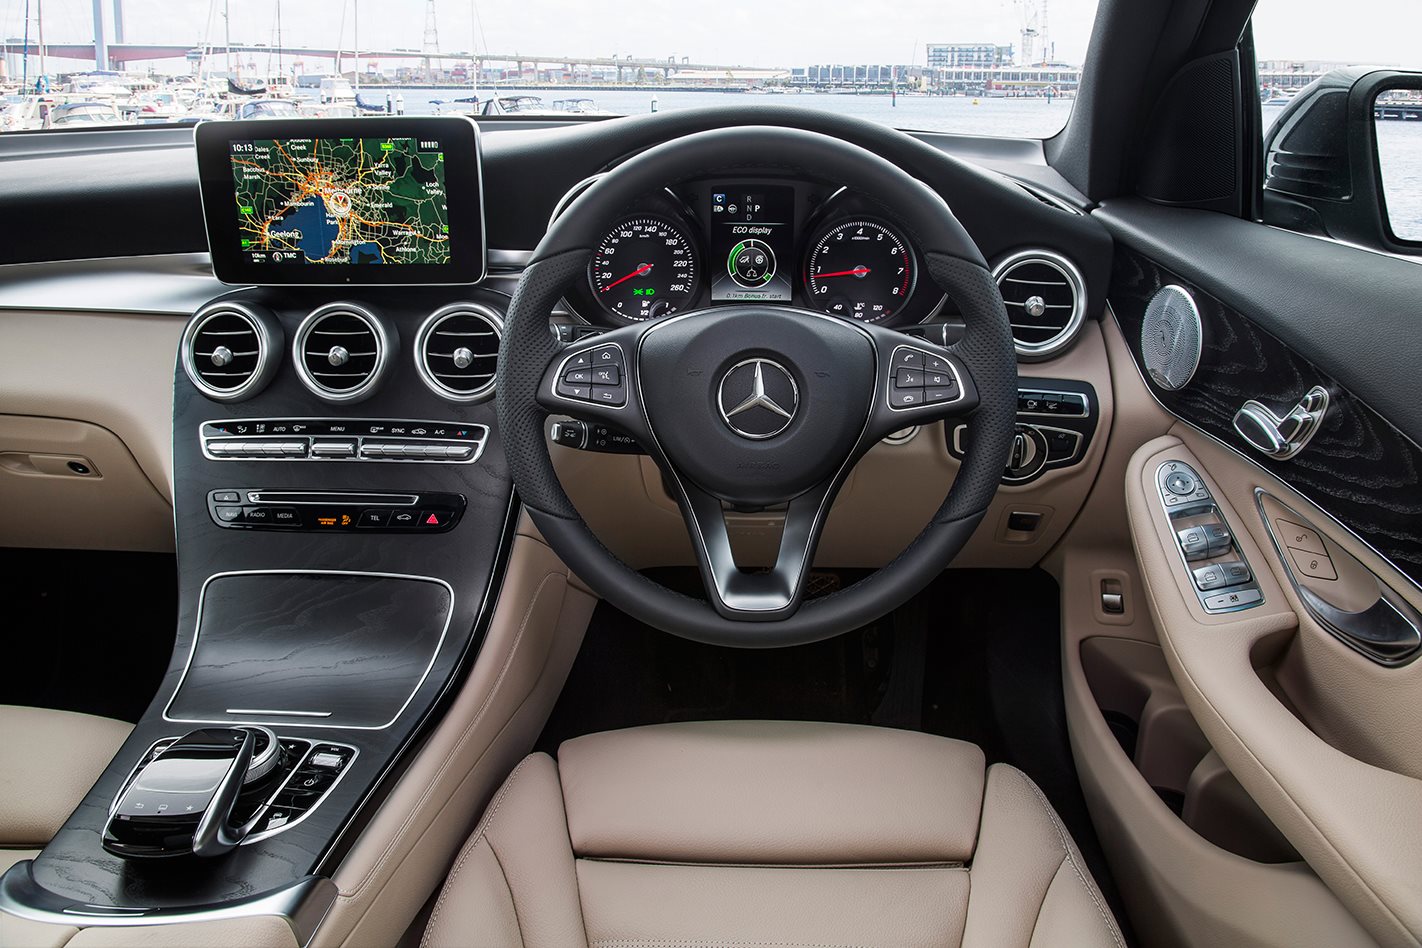 نقد و بررسی مرسدس بنز GLC یک اس یو وی زیبا (2017 Mercedes-Benz GLC)